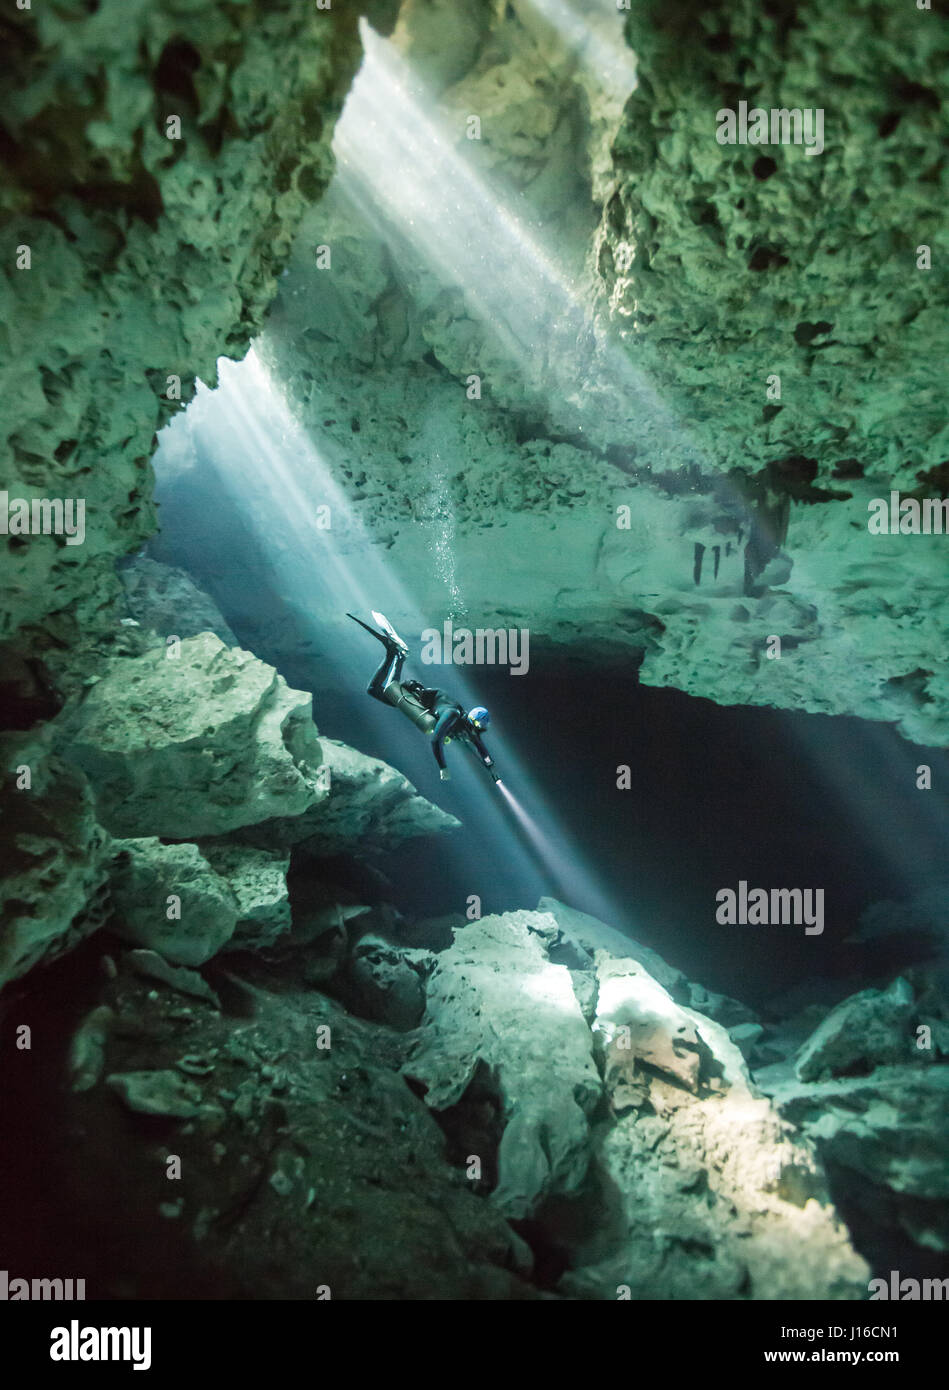 CENOTE EL EDEN, Mexiko: Taucher Abstieg in Cenote. STÜRZEN die Tiefen der tiefblaue Meer Bilder zeigen, wie diese Tauchen Zahnarzt das ultimative Unterwasser Selfie sucht. Posiert neben einem Walhai zeigen diese humorvolle Bilder, dass es nie eine schlechte Zeit für eine schnelle Snap von sich selbst mit einem 20 t-Meer-Tier.  Andere Bilder zeigen Taucher in einigen der unglaublichsten Hintergründe der Welt, vom Tauchen mit einem Blauhai auf den Azoren zu erforschen einen umfangreichen Wissenspool in Veikkola, Finnlands. Finnische Zahnarzt Markku Petteri Viljakainen (37), hat auf der ganzen Welt zu erfassen und teilen seine erstaunliche tauchte Stockfoto